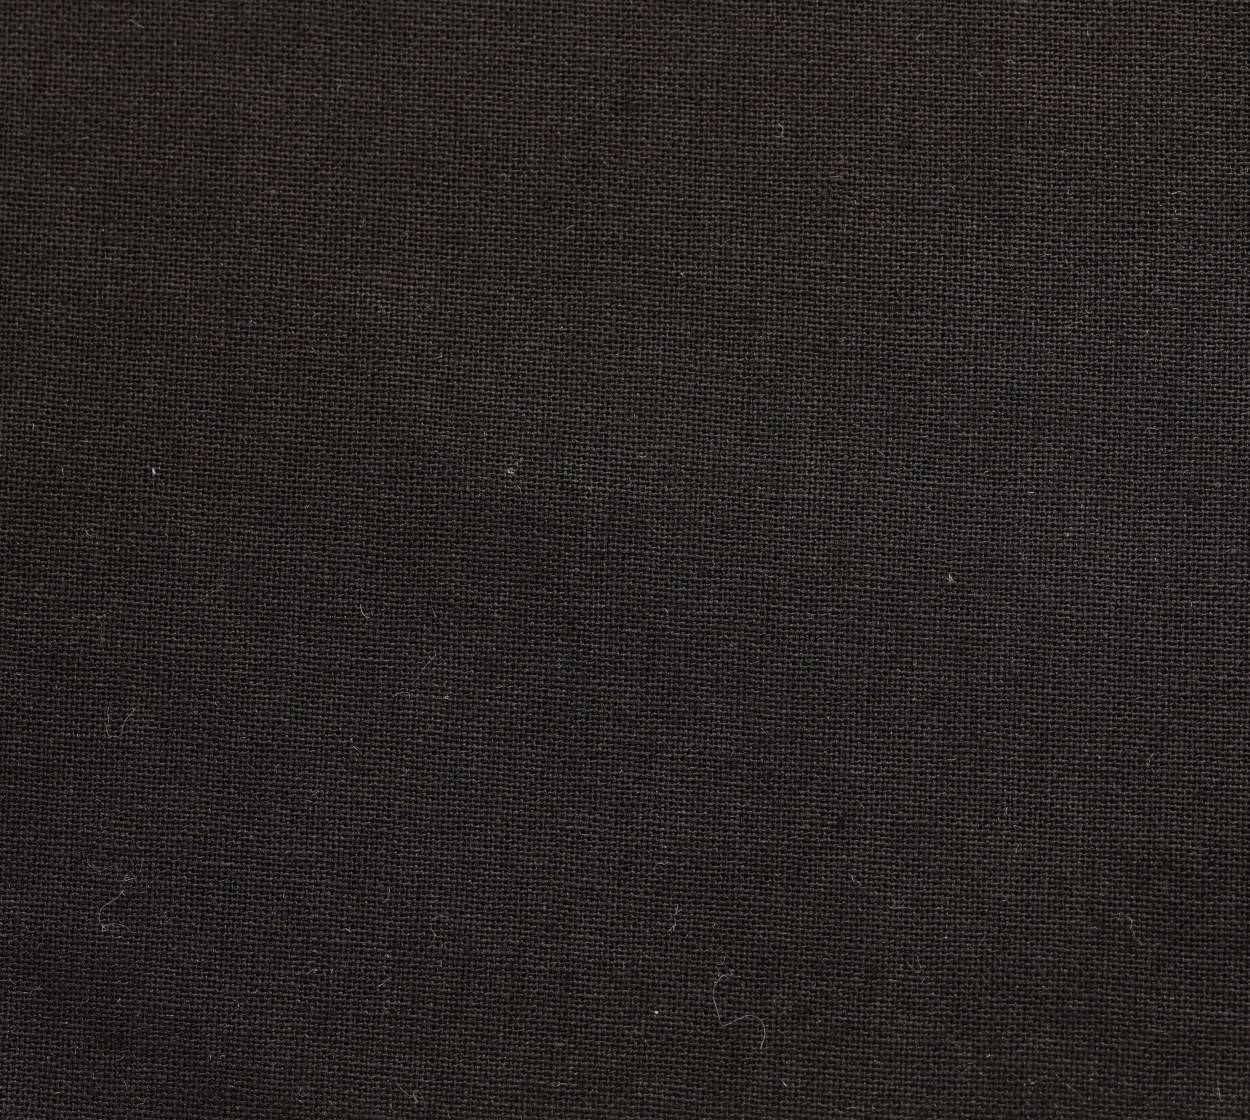 Nessel Baumwolle, schwarz 347, 4,20 m breit, 6N57 im Stamm online Store München